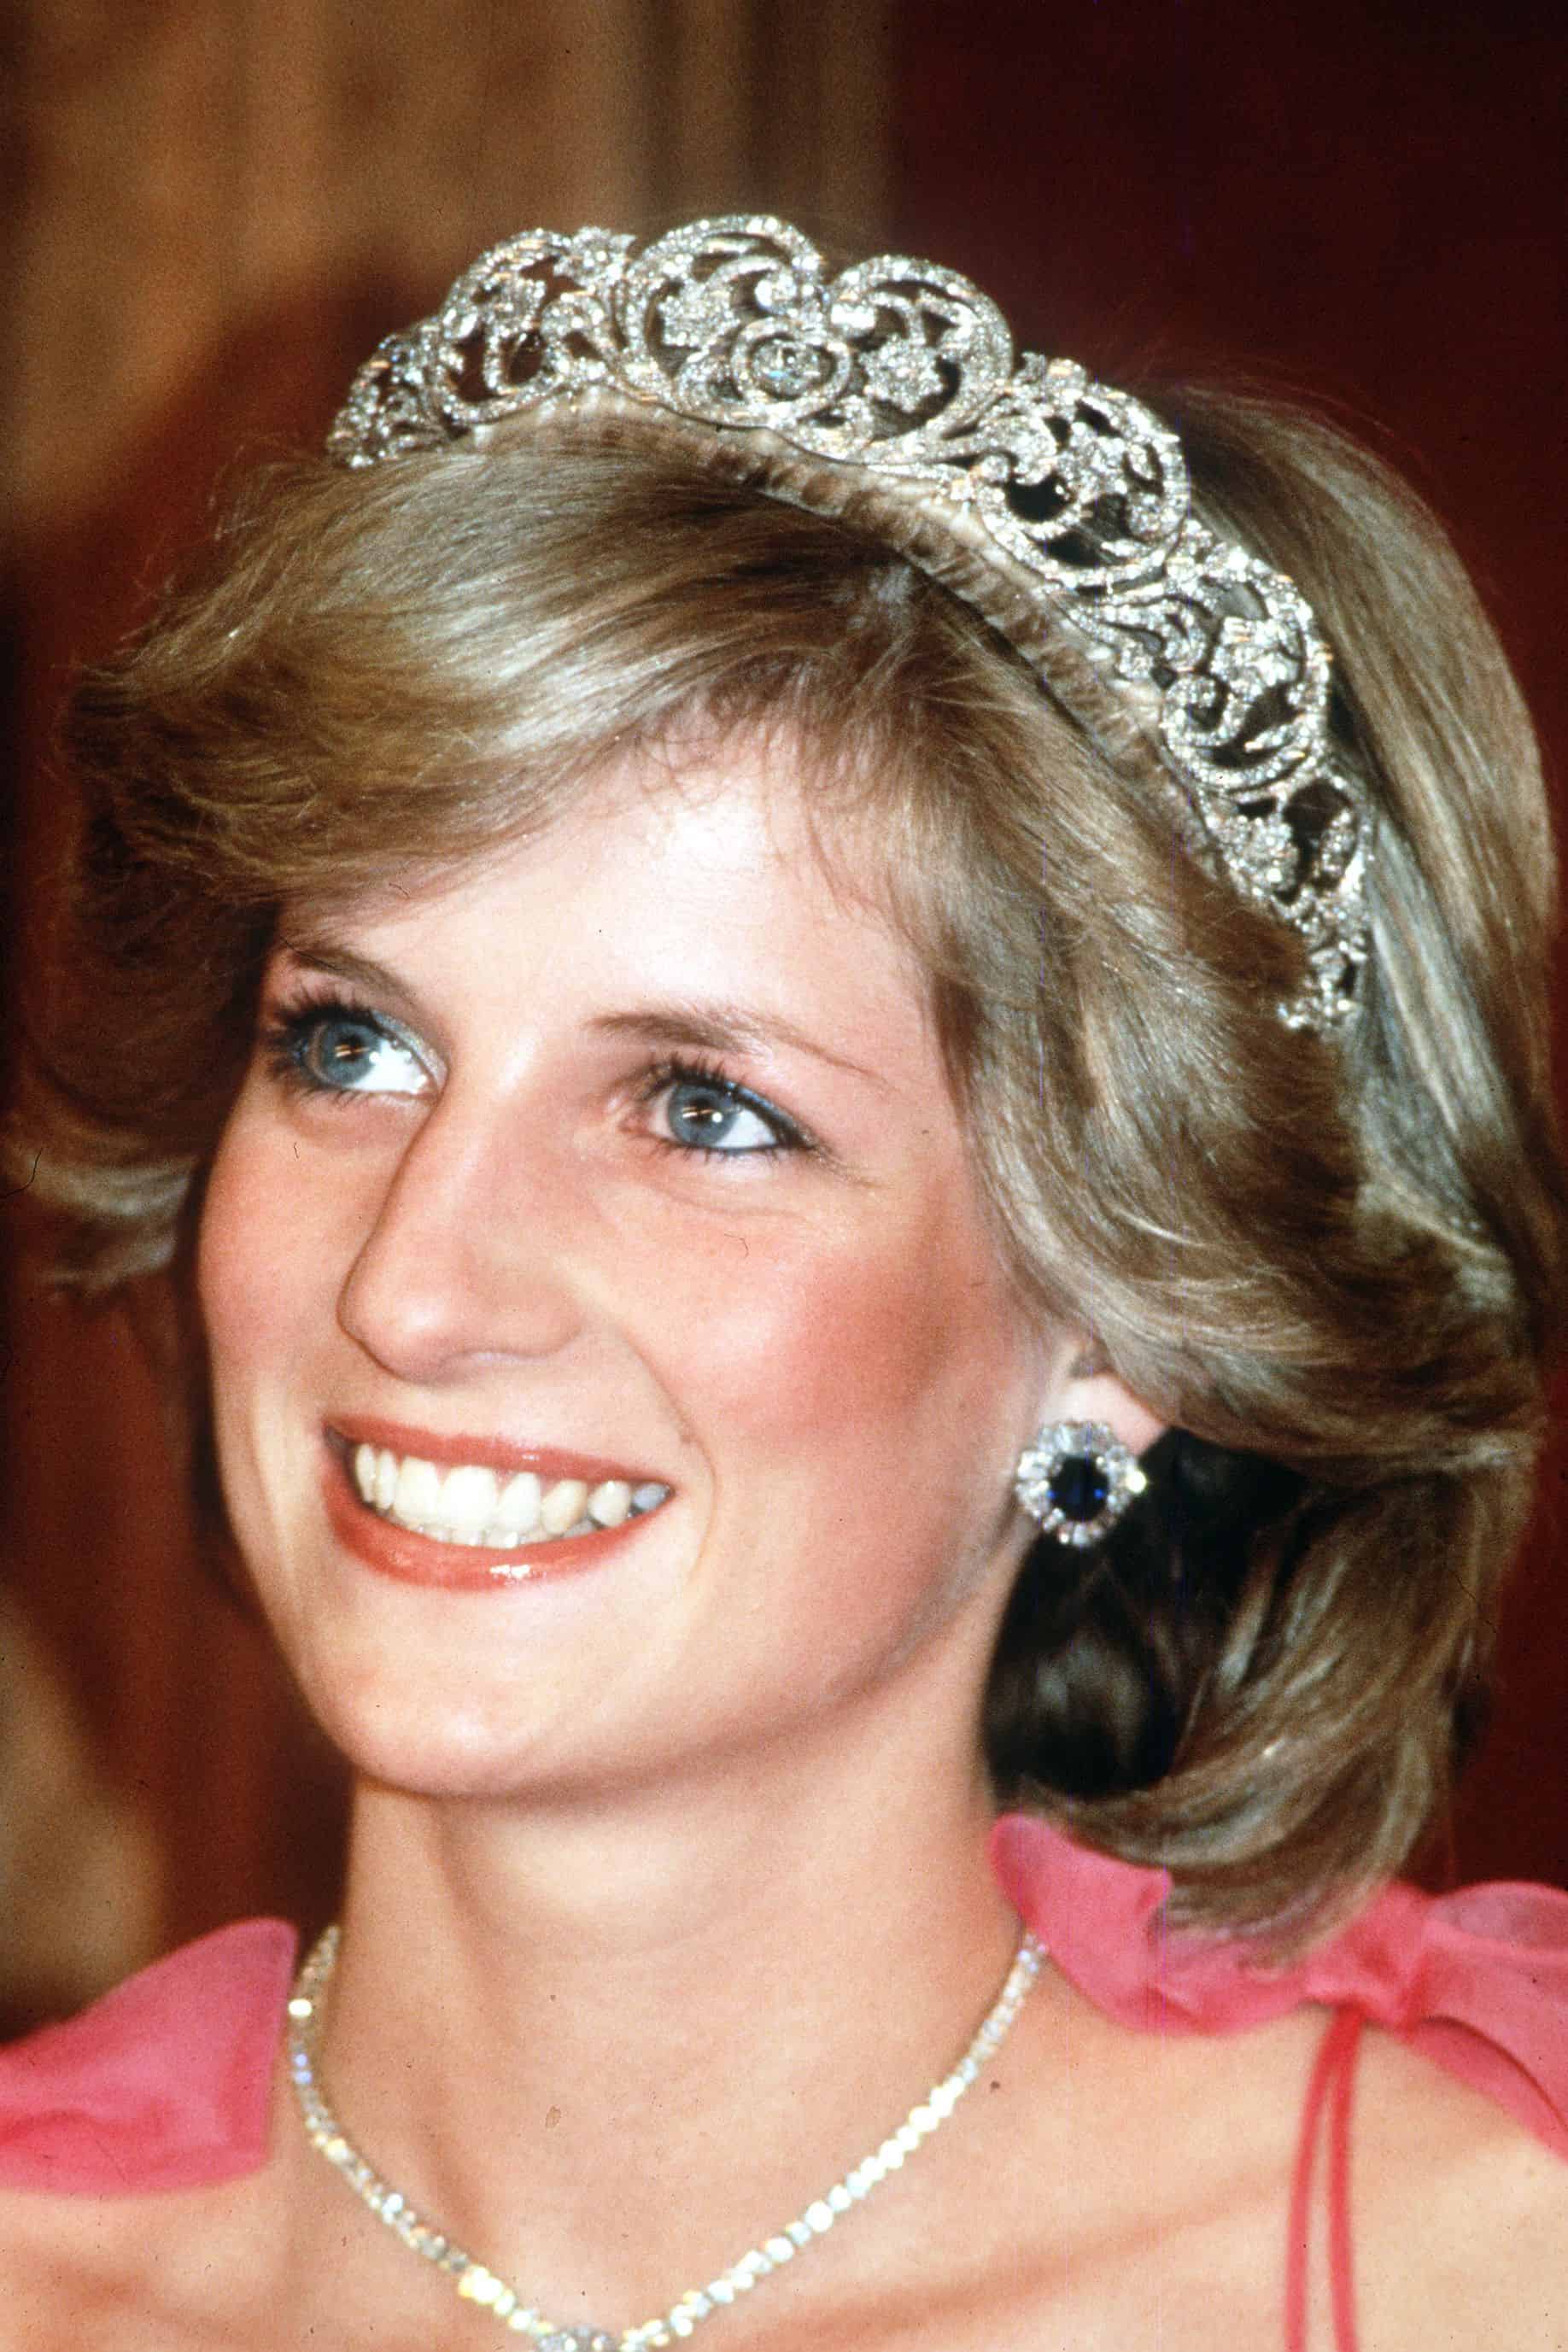 Şahzadə Diananın saç düzümü